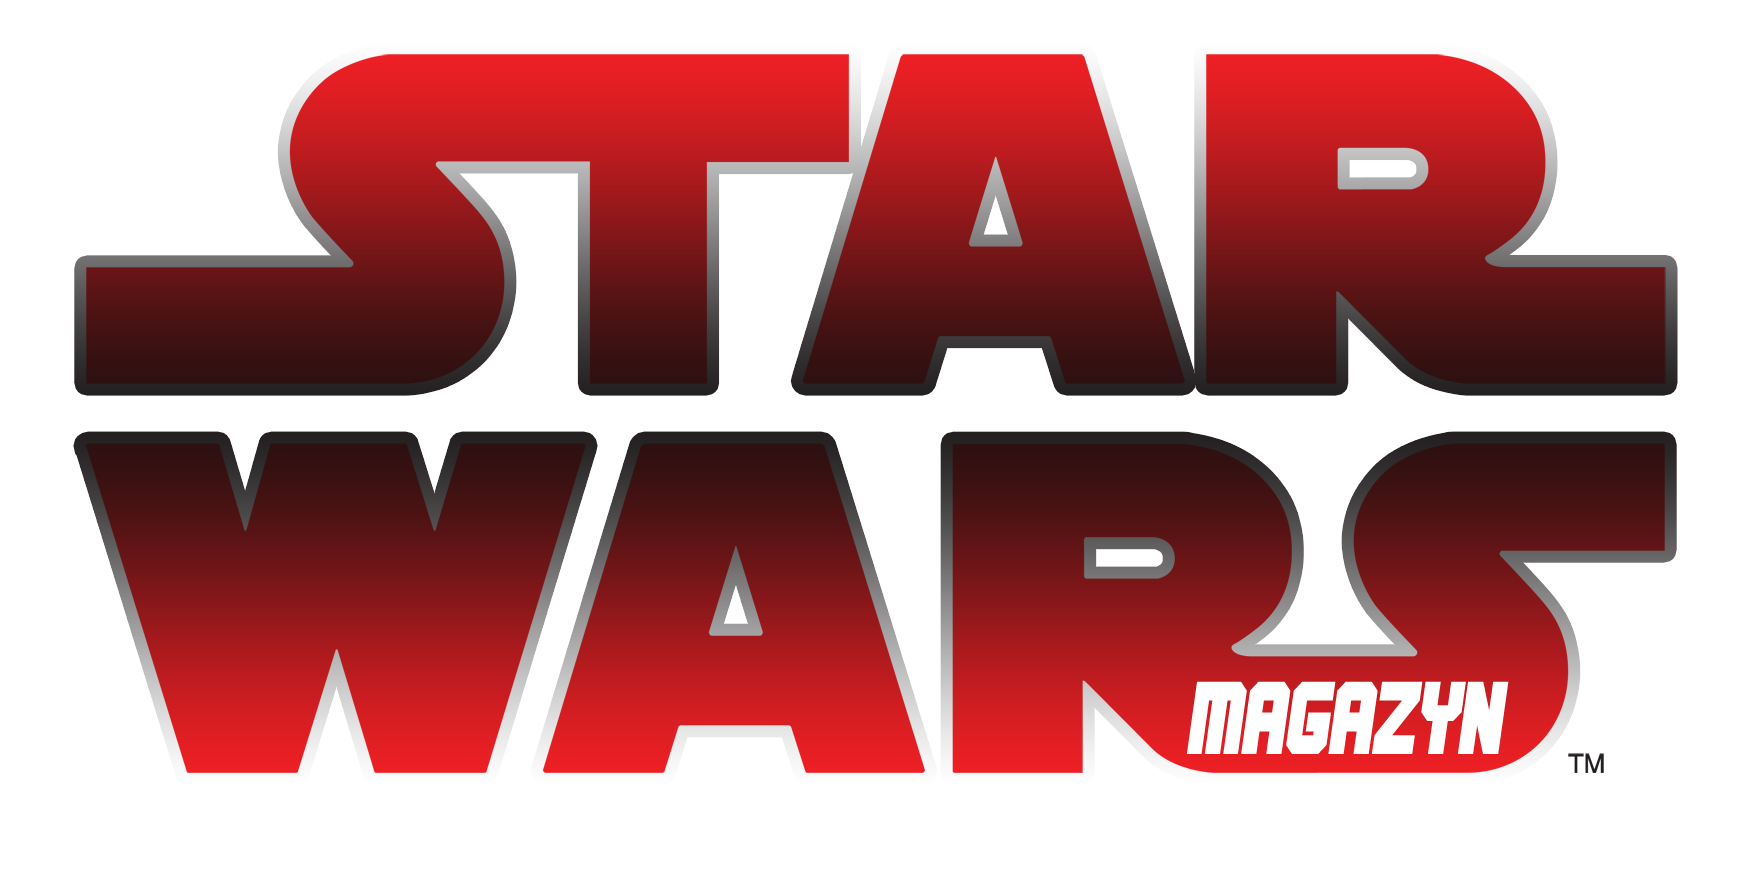 Plik:Star Wars Magazyn.png